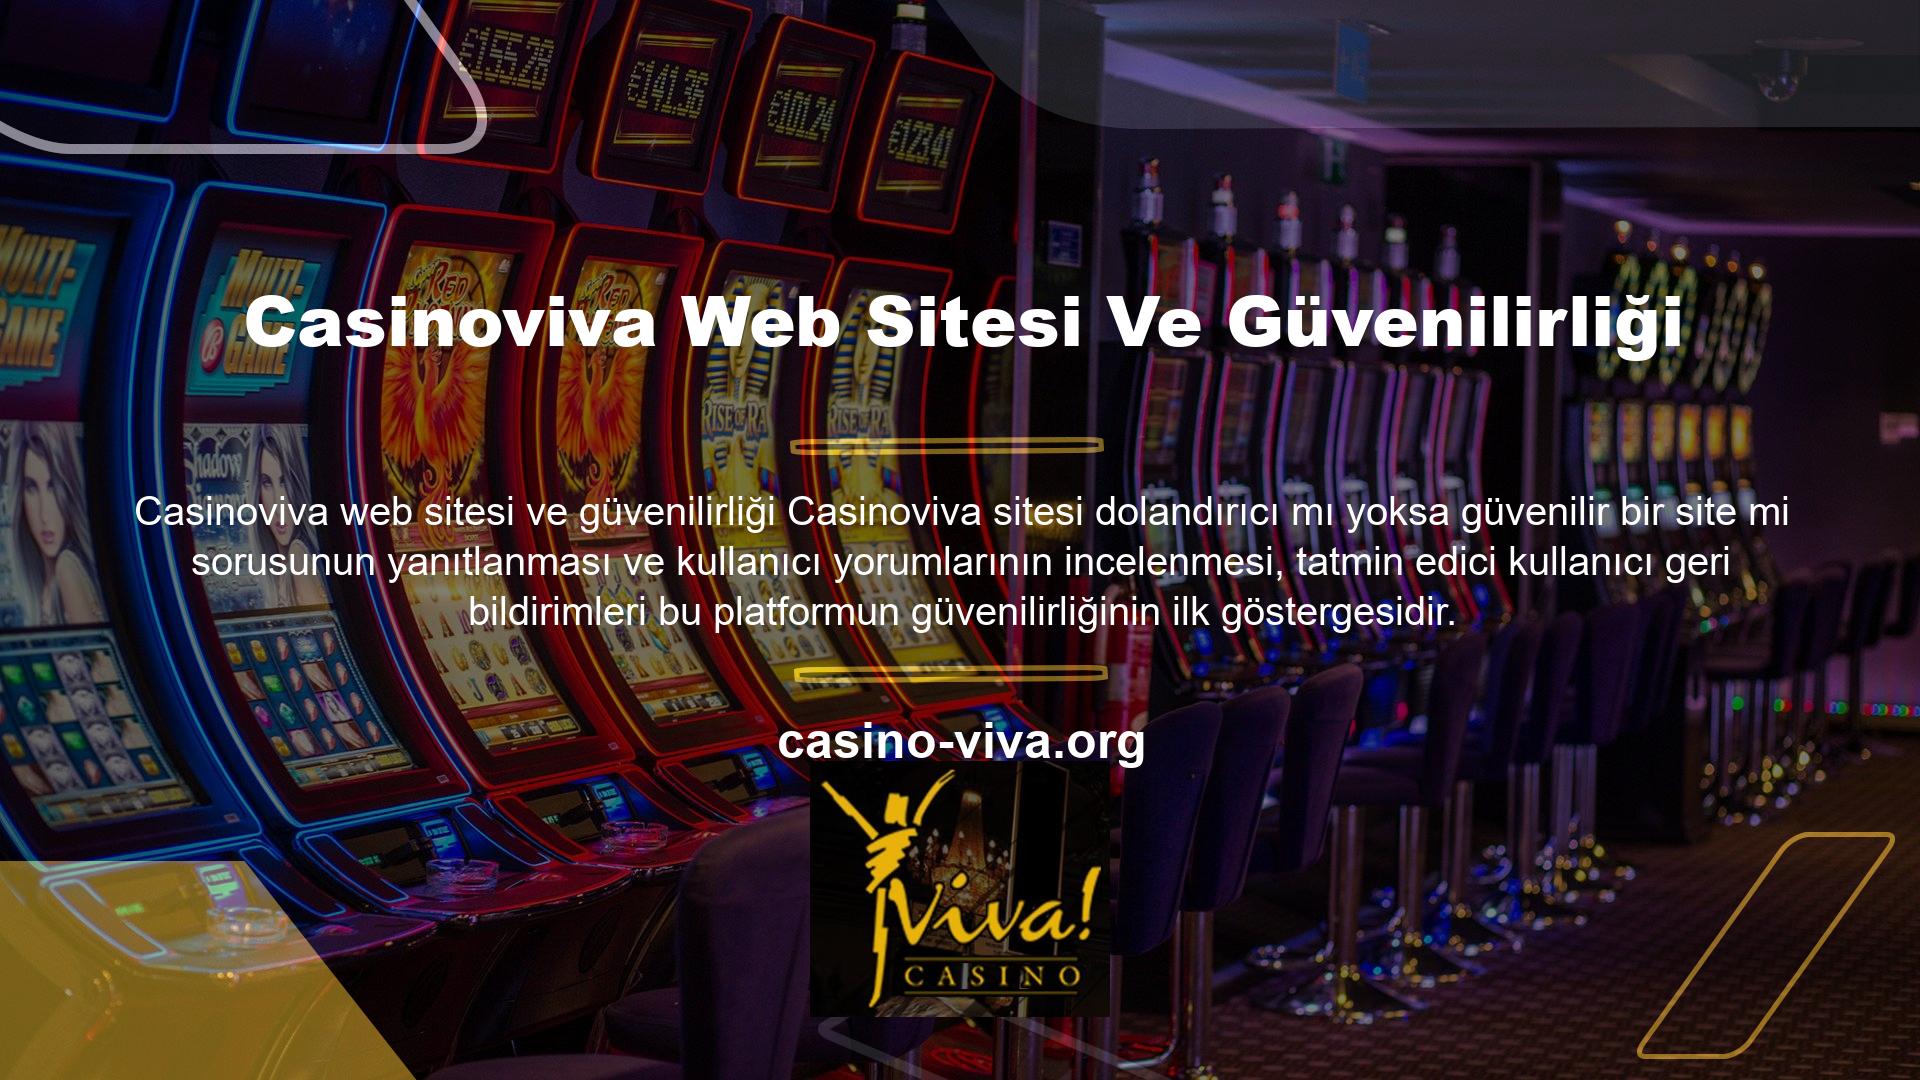 Sitede kullanıcılara sunulan her zaman açık olan destek hattına ek olarak Casinoviva dolandırıcı mı diye sormaktan çekinmeyin